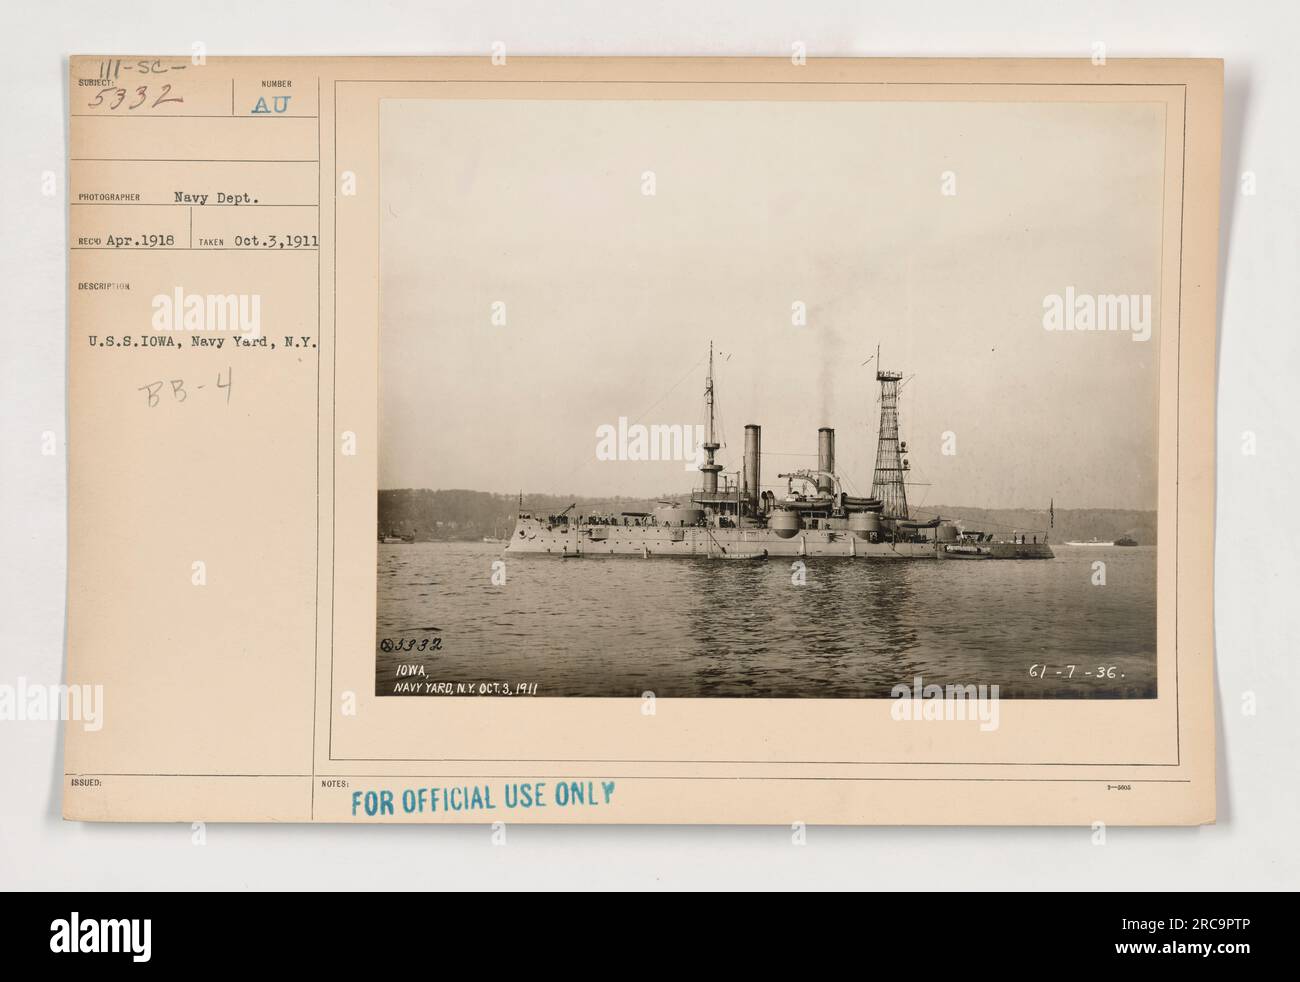 Abbildung zeigt U.S.S. Iowa, ein Schlachtschiff der US Navy, während einer Flottenüberprüfung. Das Foto wurde am 3. Oktober 1911 am Navy Yard in New York aufgenommen. Die offizielle Beschreibungsnummer lautet BB-4, und das Bild wurde nur zur amtlichen Verwendung herausgegeben. Stockfoto